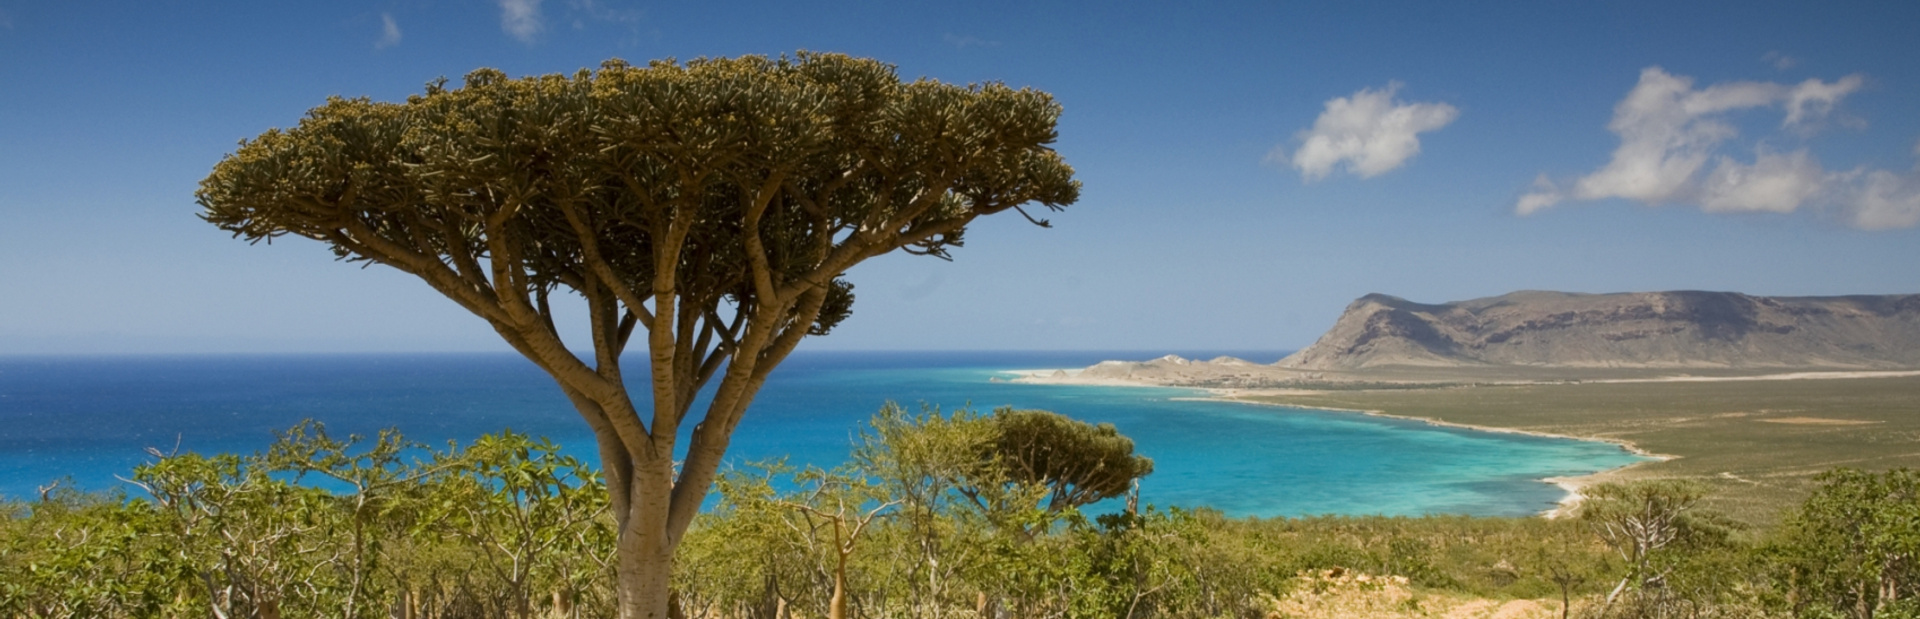 Socotra news photo